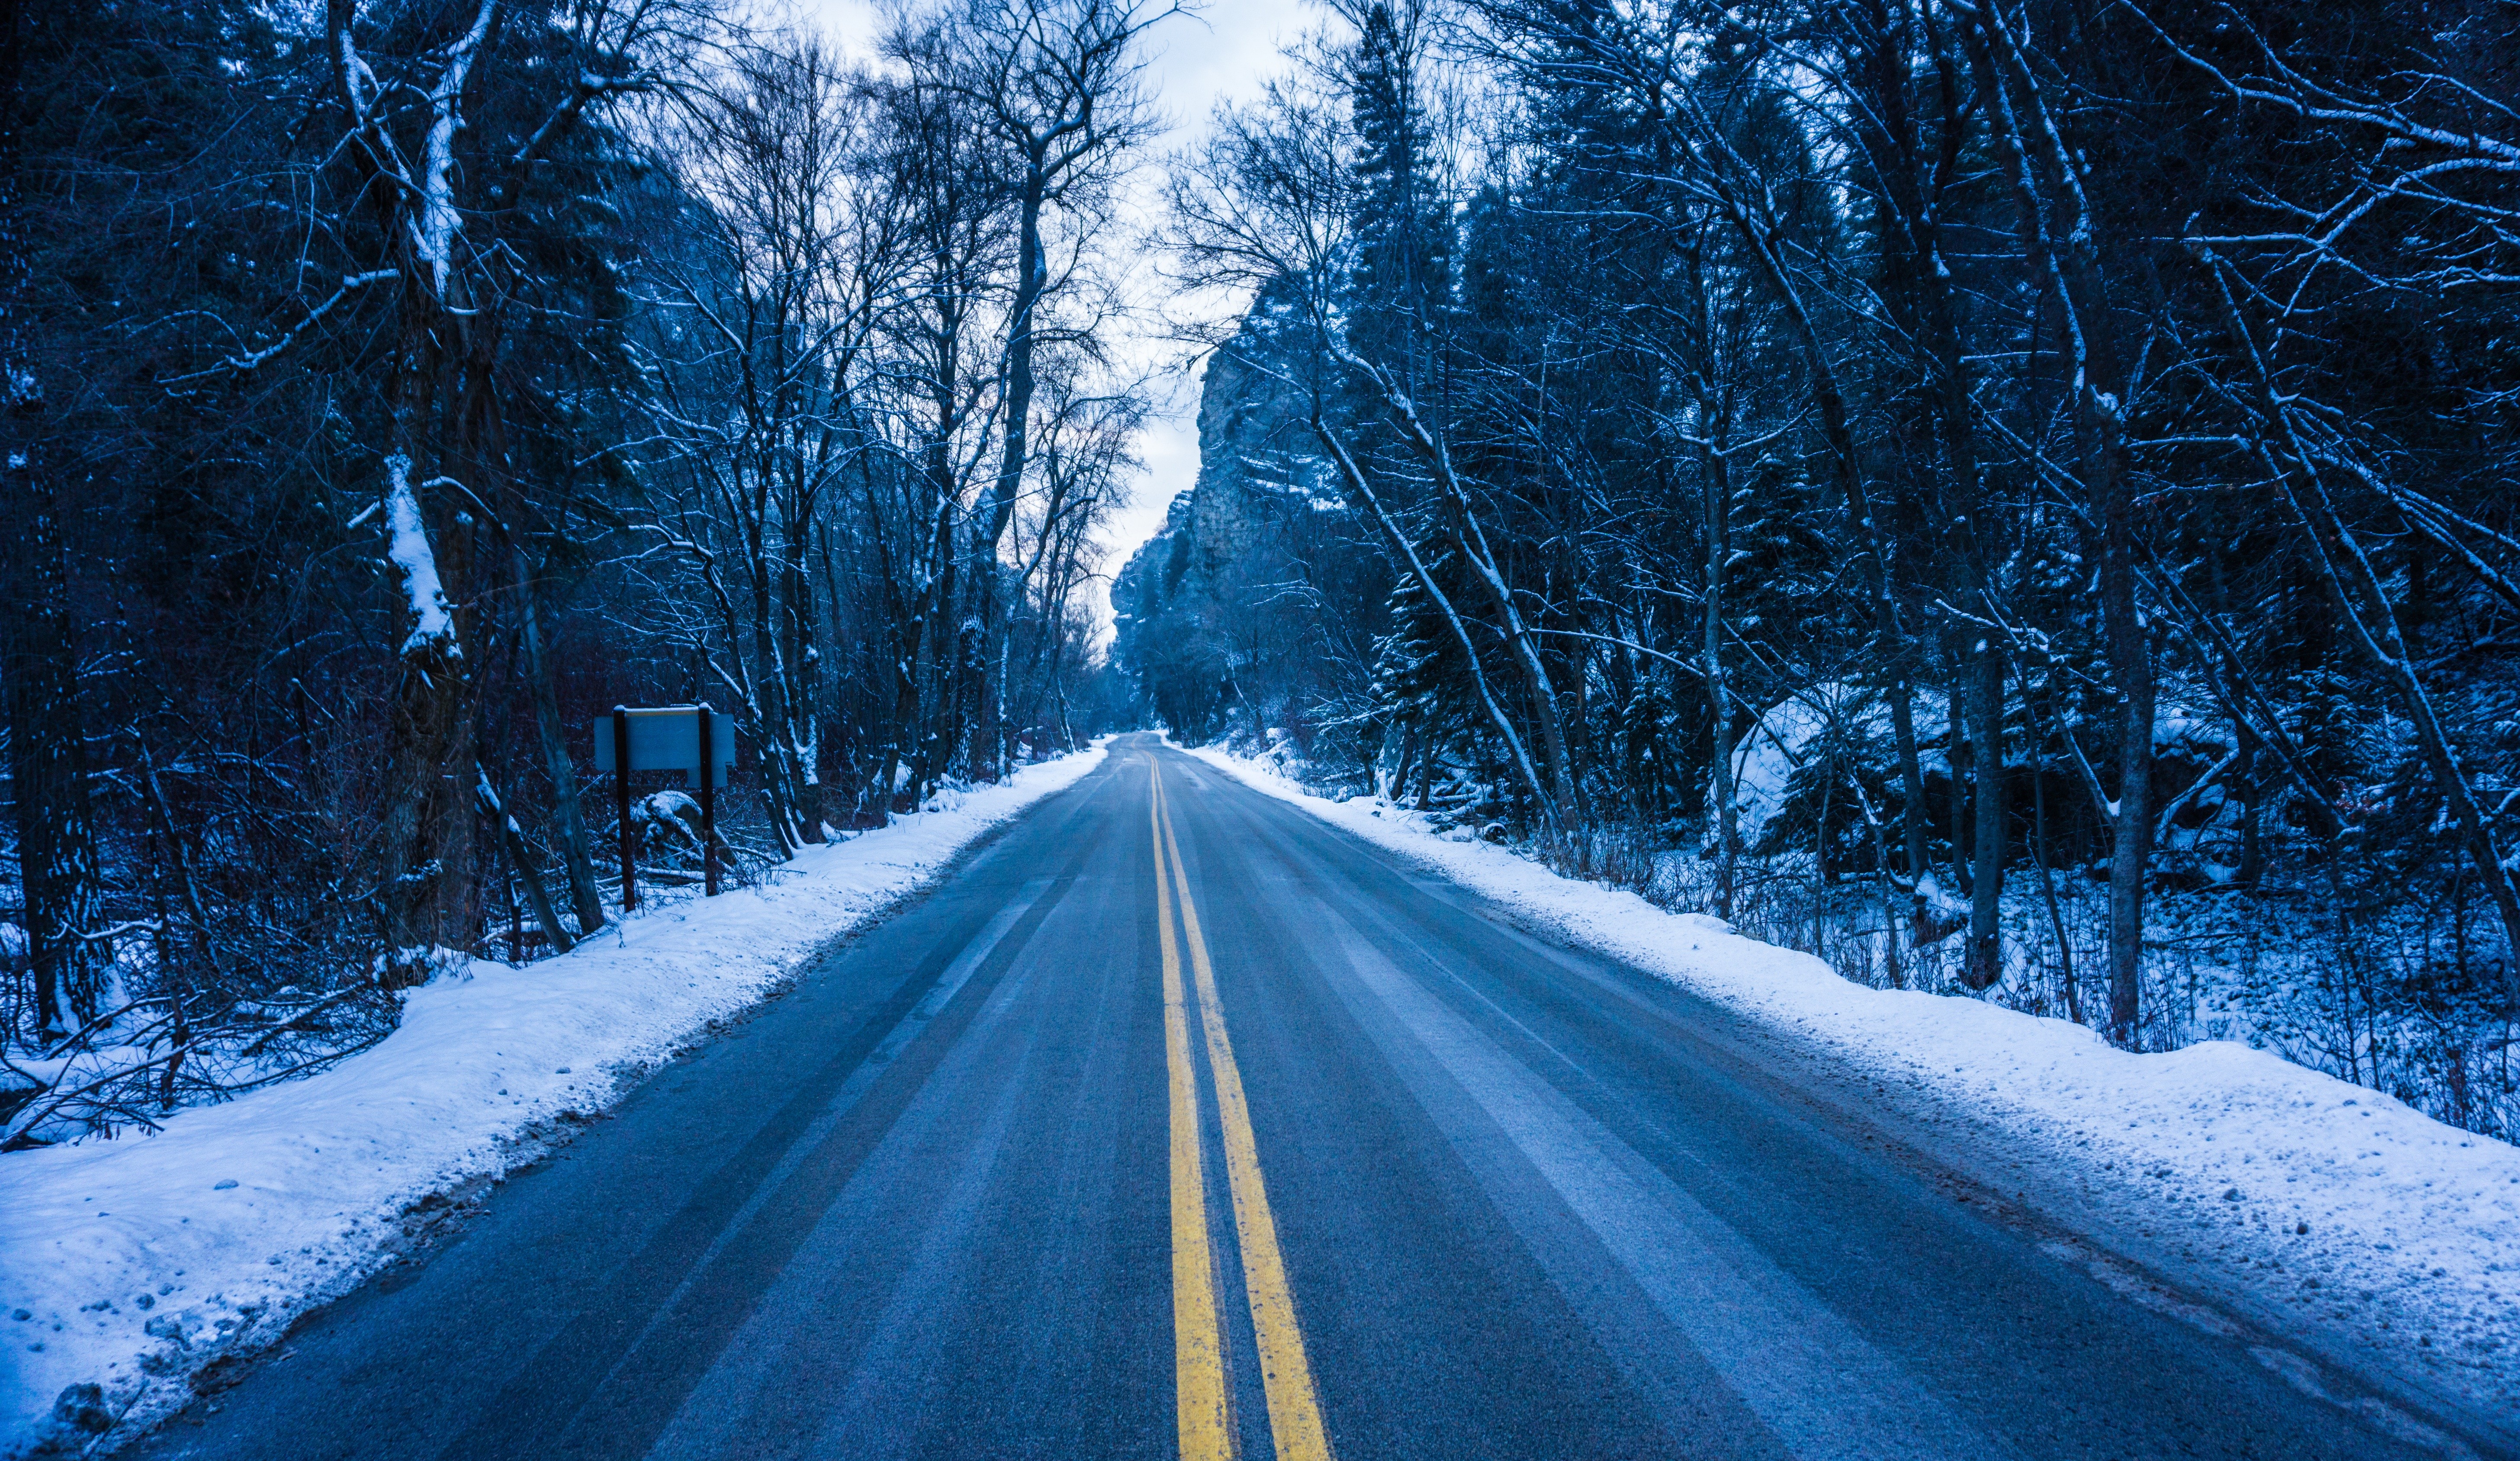 Тема зимней дороги